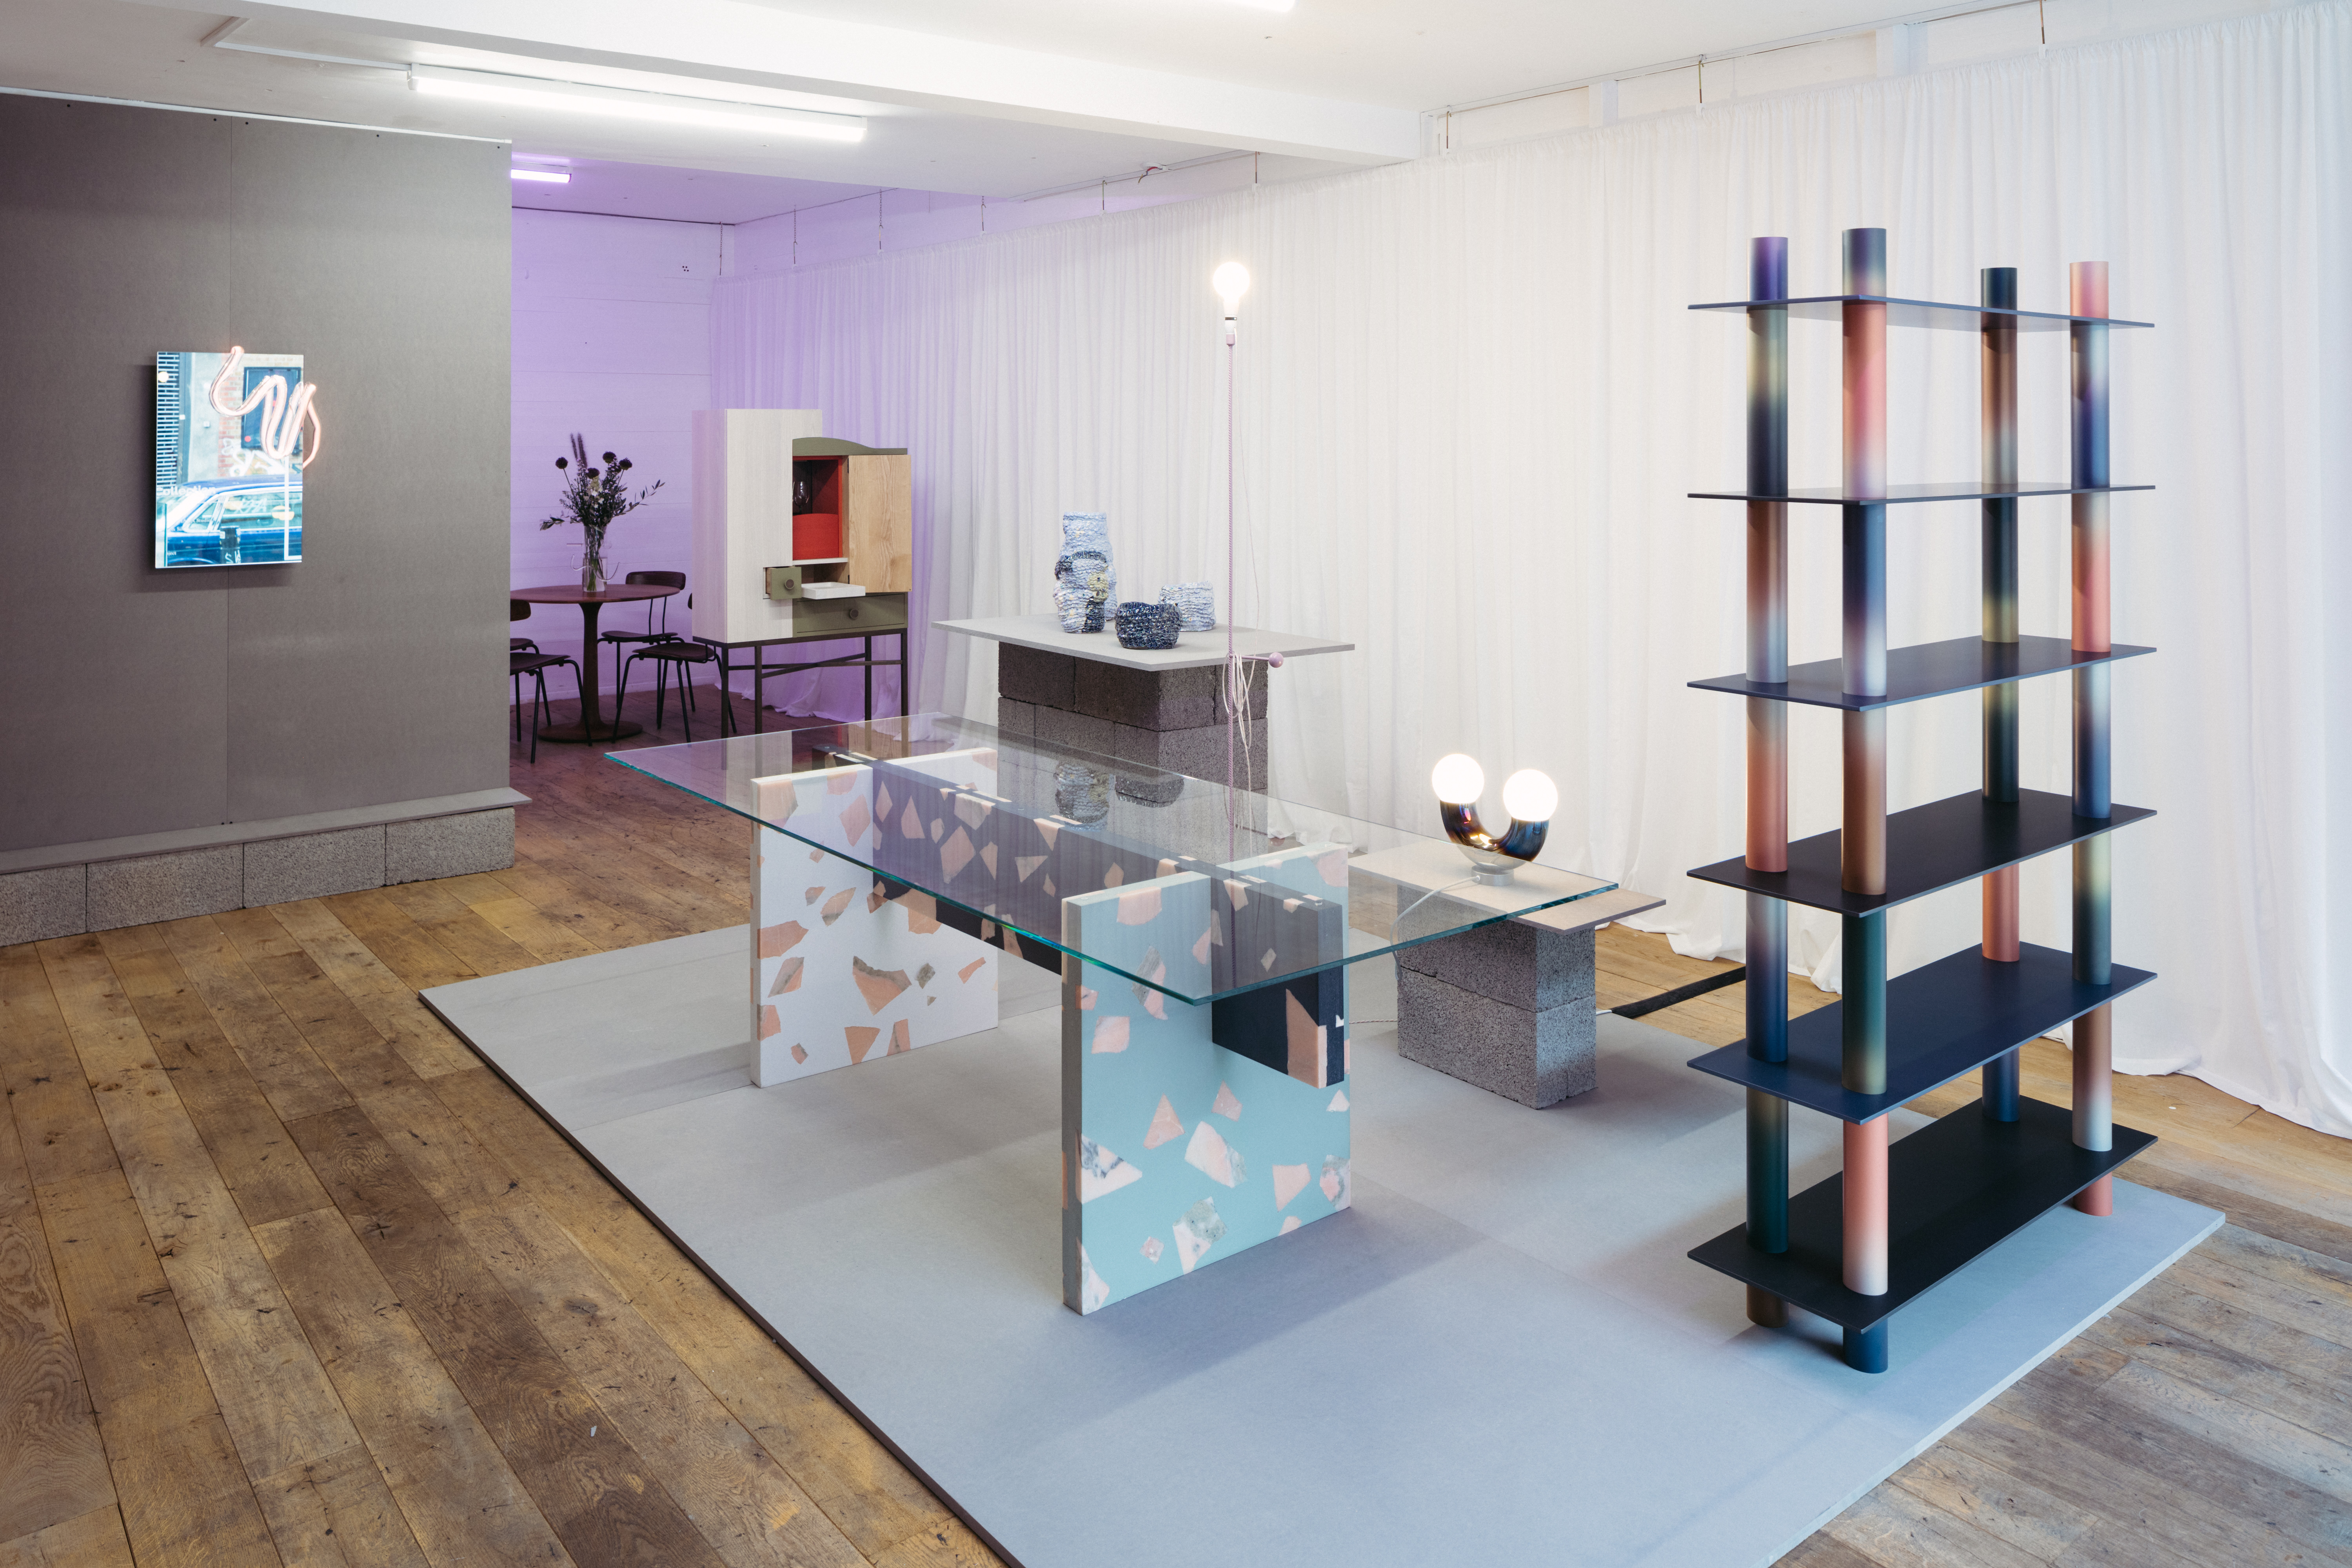 London Design Festival 2019: Relay Design Agency présente Arcade Collection #1